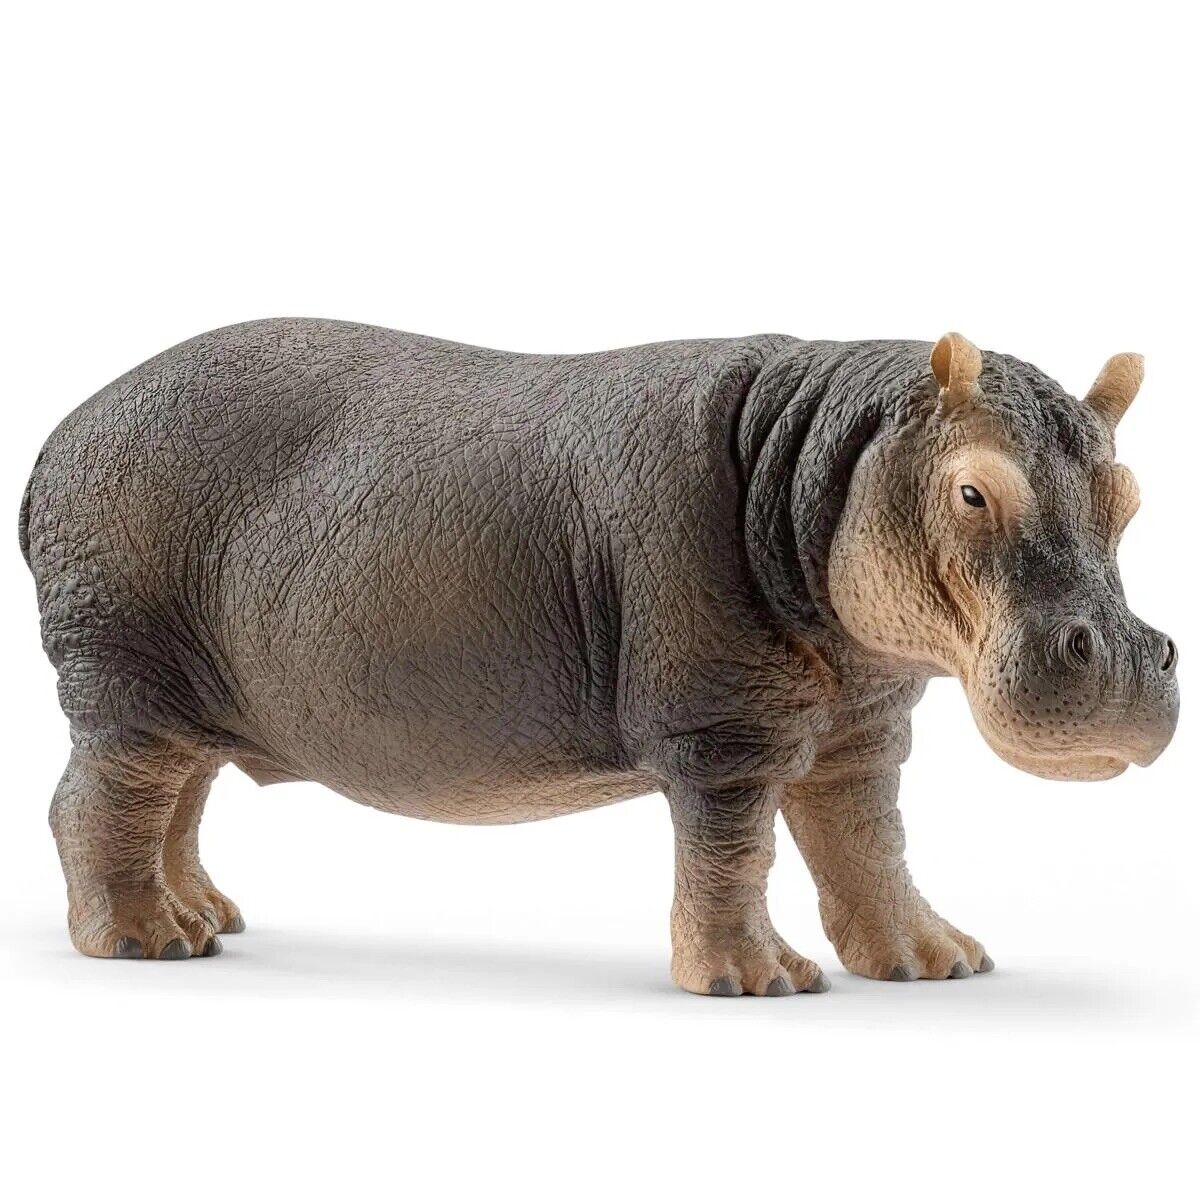 Schleich 14814 Hippopotamus Figure Wildlife Safari Hippo 2017 Toy